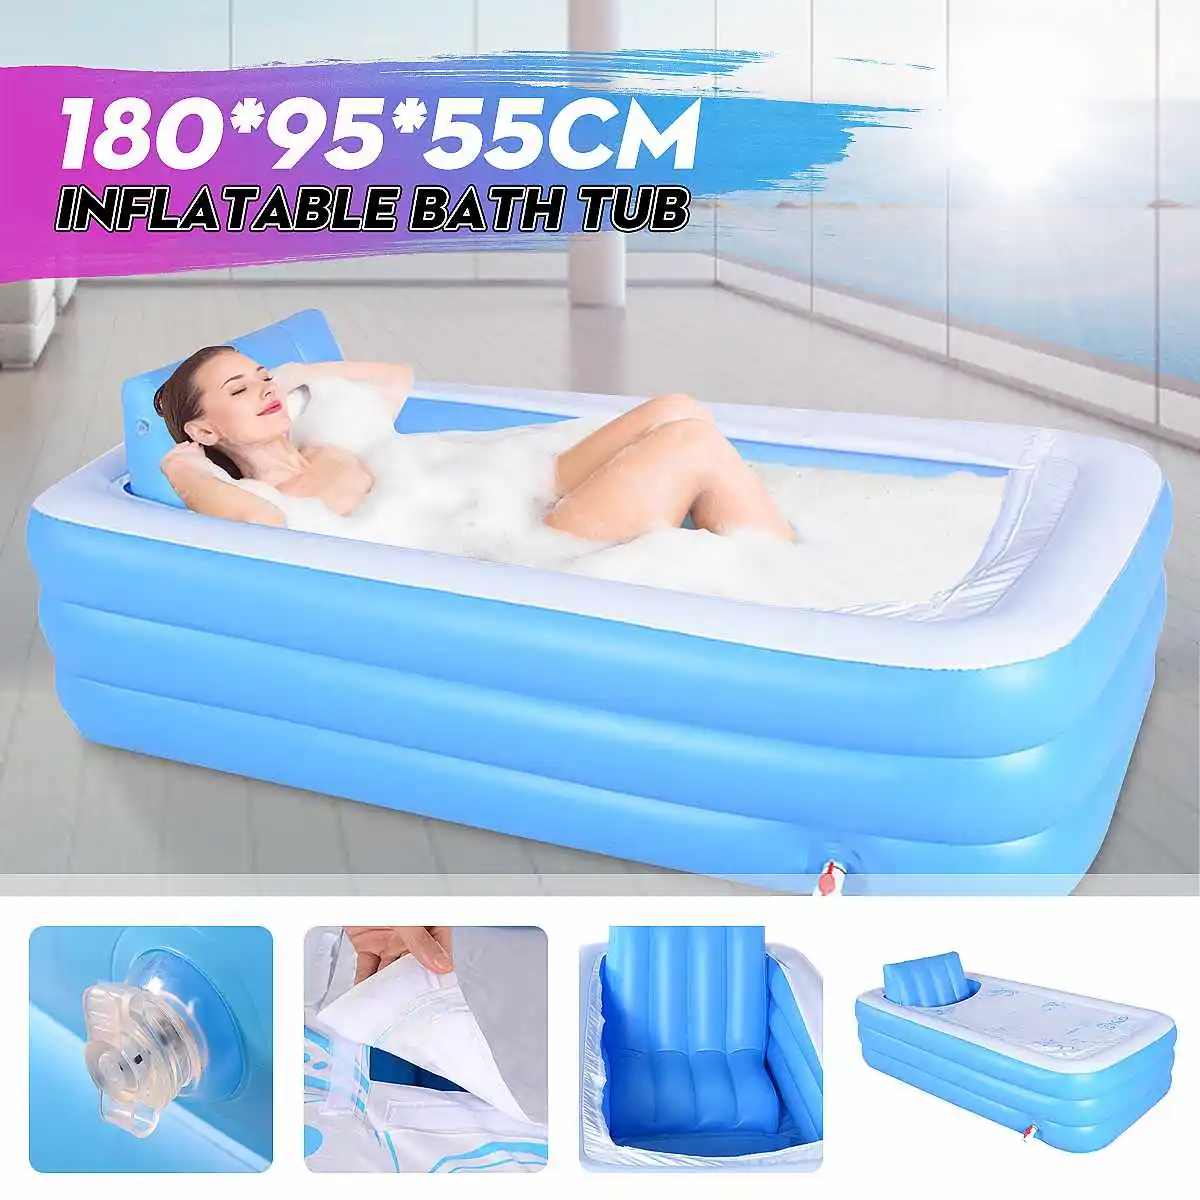 

Портативная Ванна 180x95x55 см, надувная ванна, Детская ванна, подушка, сохраняющая тепло, Складная Ванна, для взрослых, домашний спа, расслабляю...